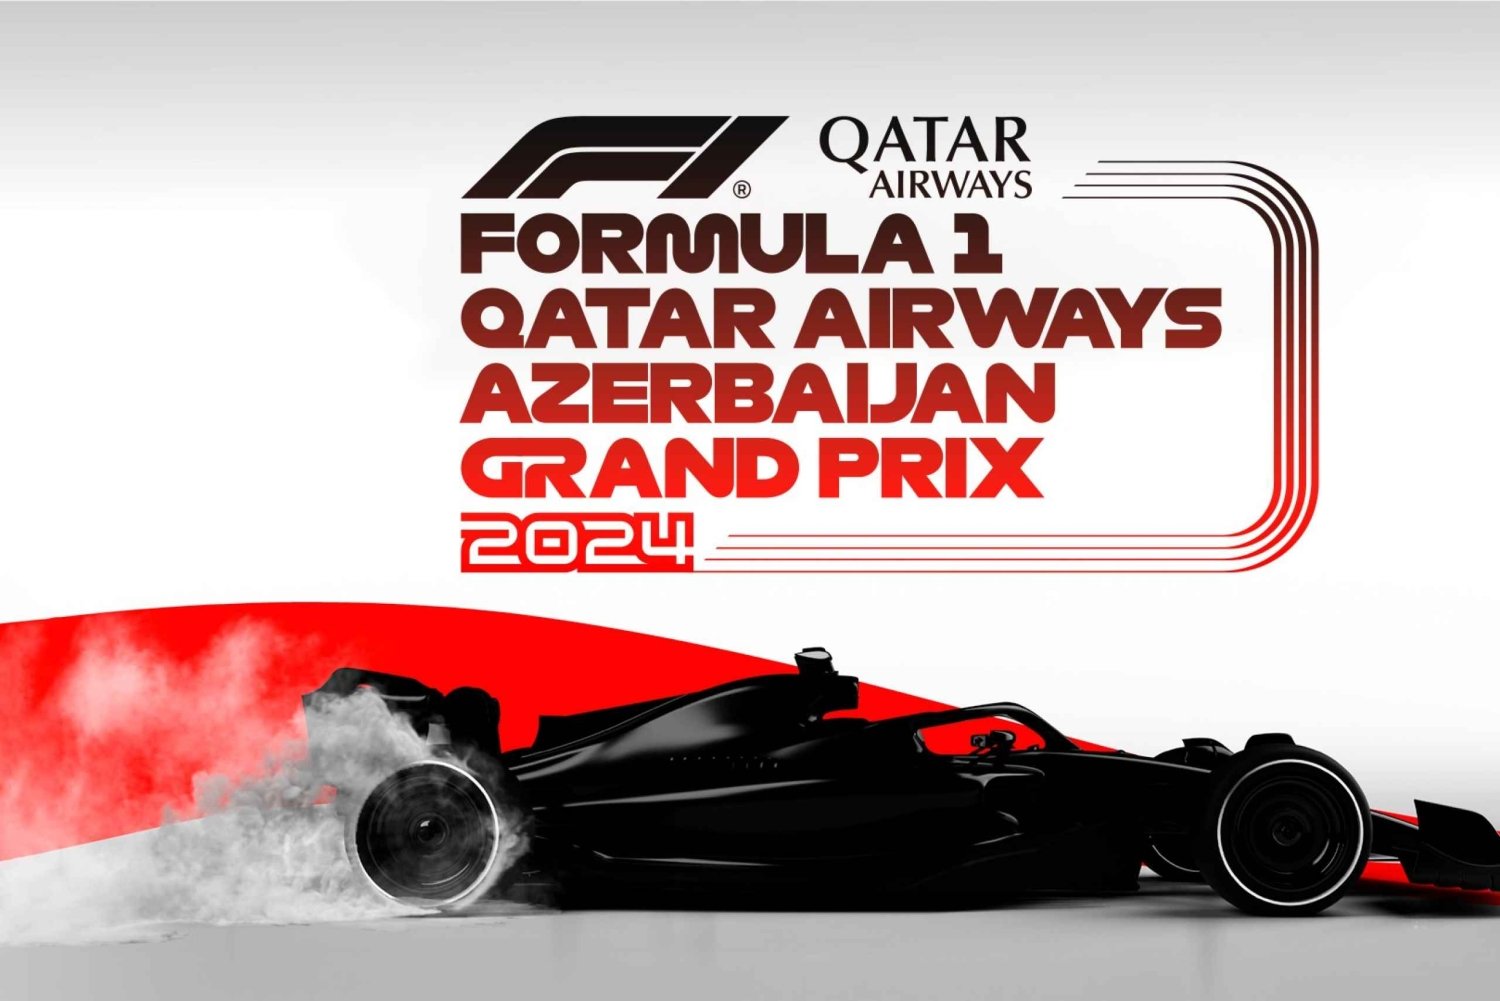 Formel 1 Grand Prix i Baku 5 dages tur